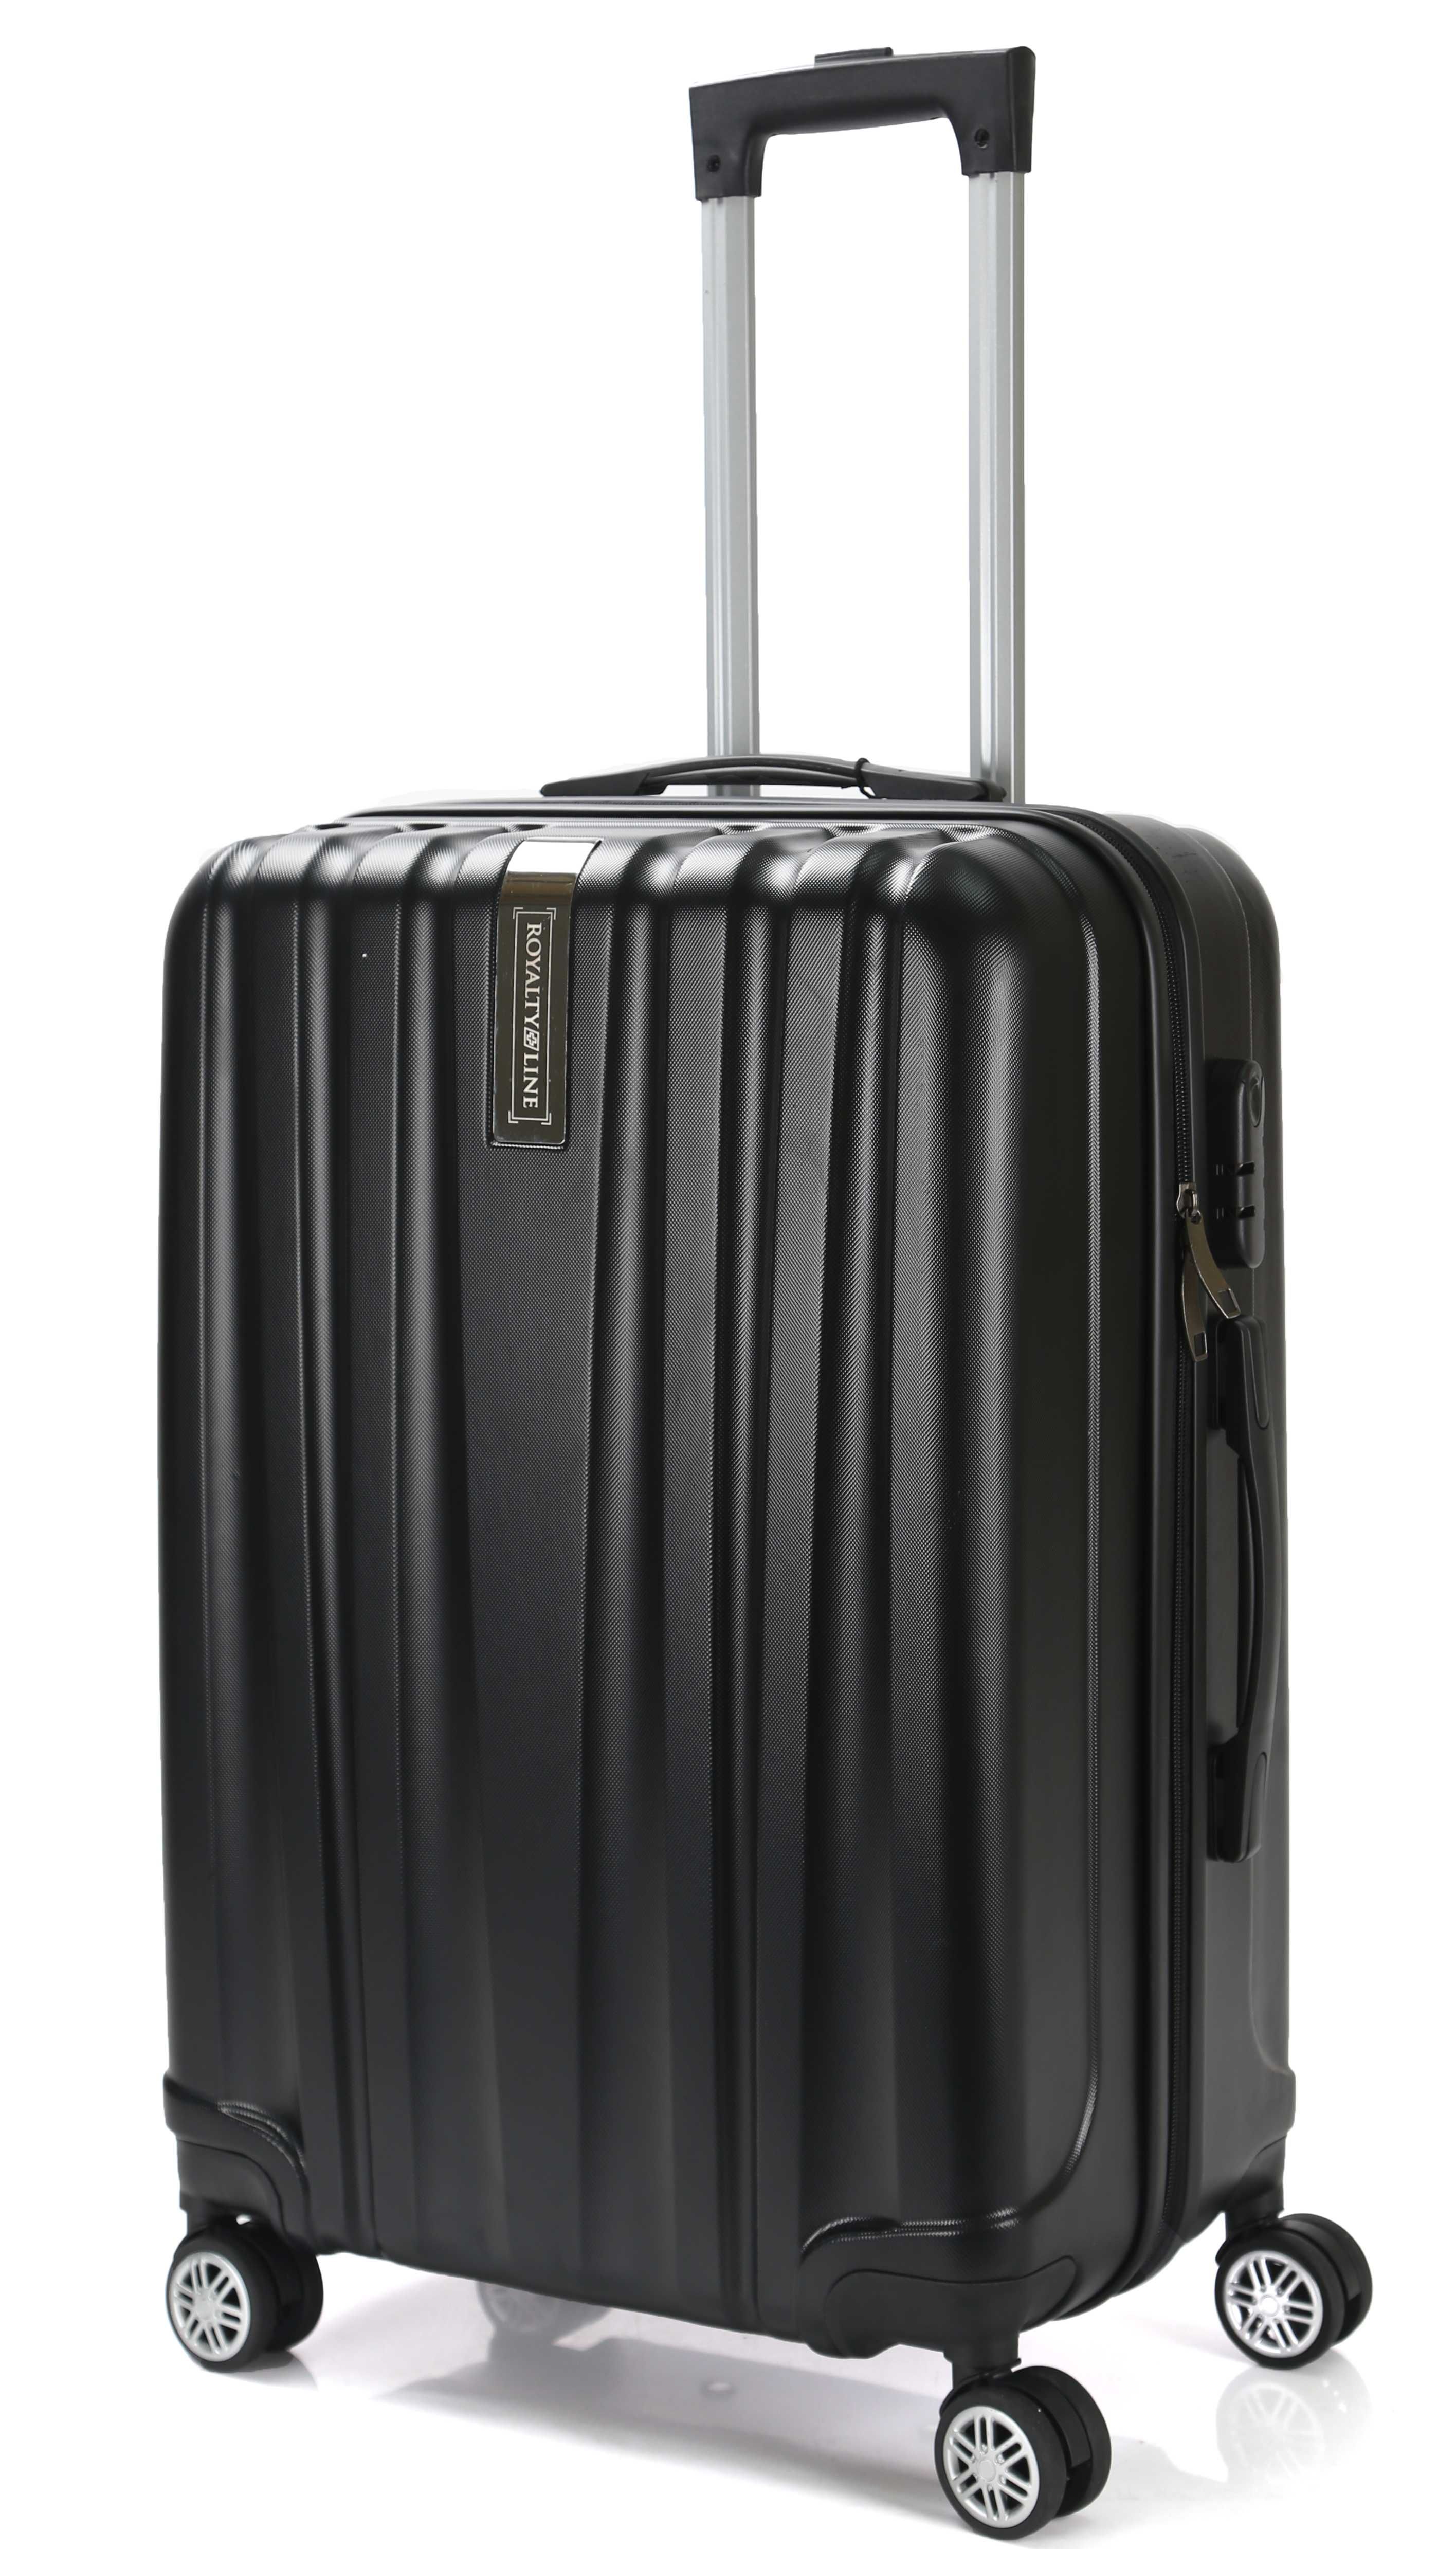 Zestaw walizek podróżnych 3 sztuki L XL XXL na kółkach + Waga bagażowa